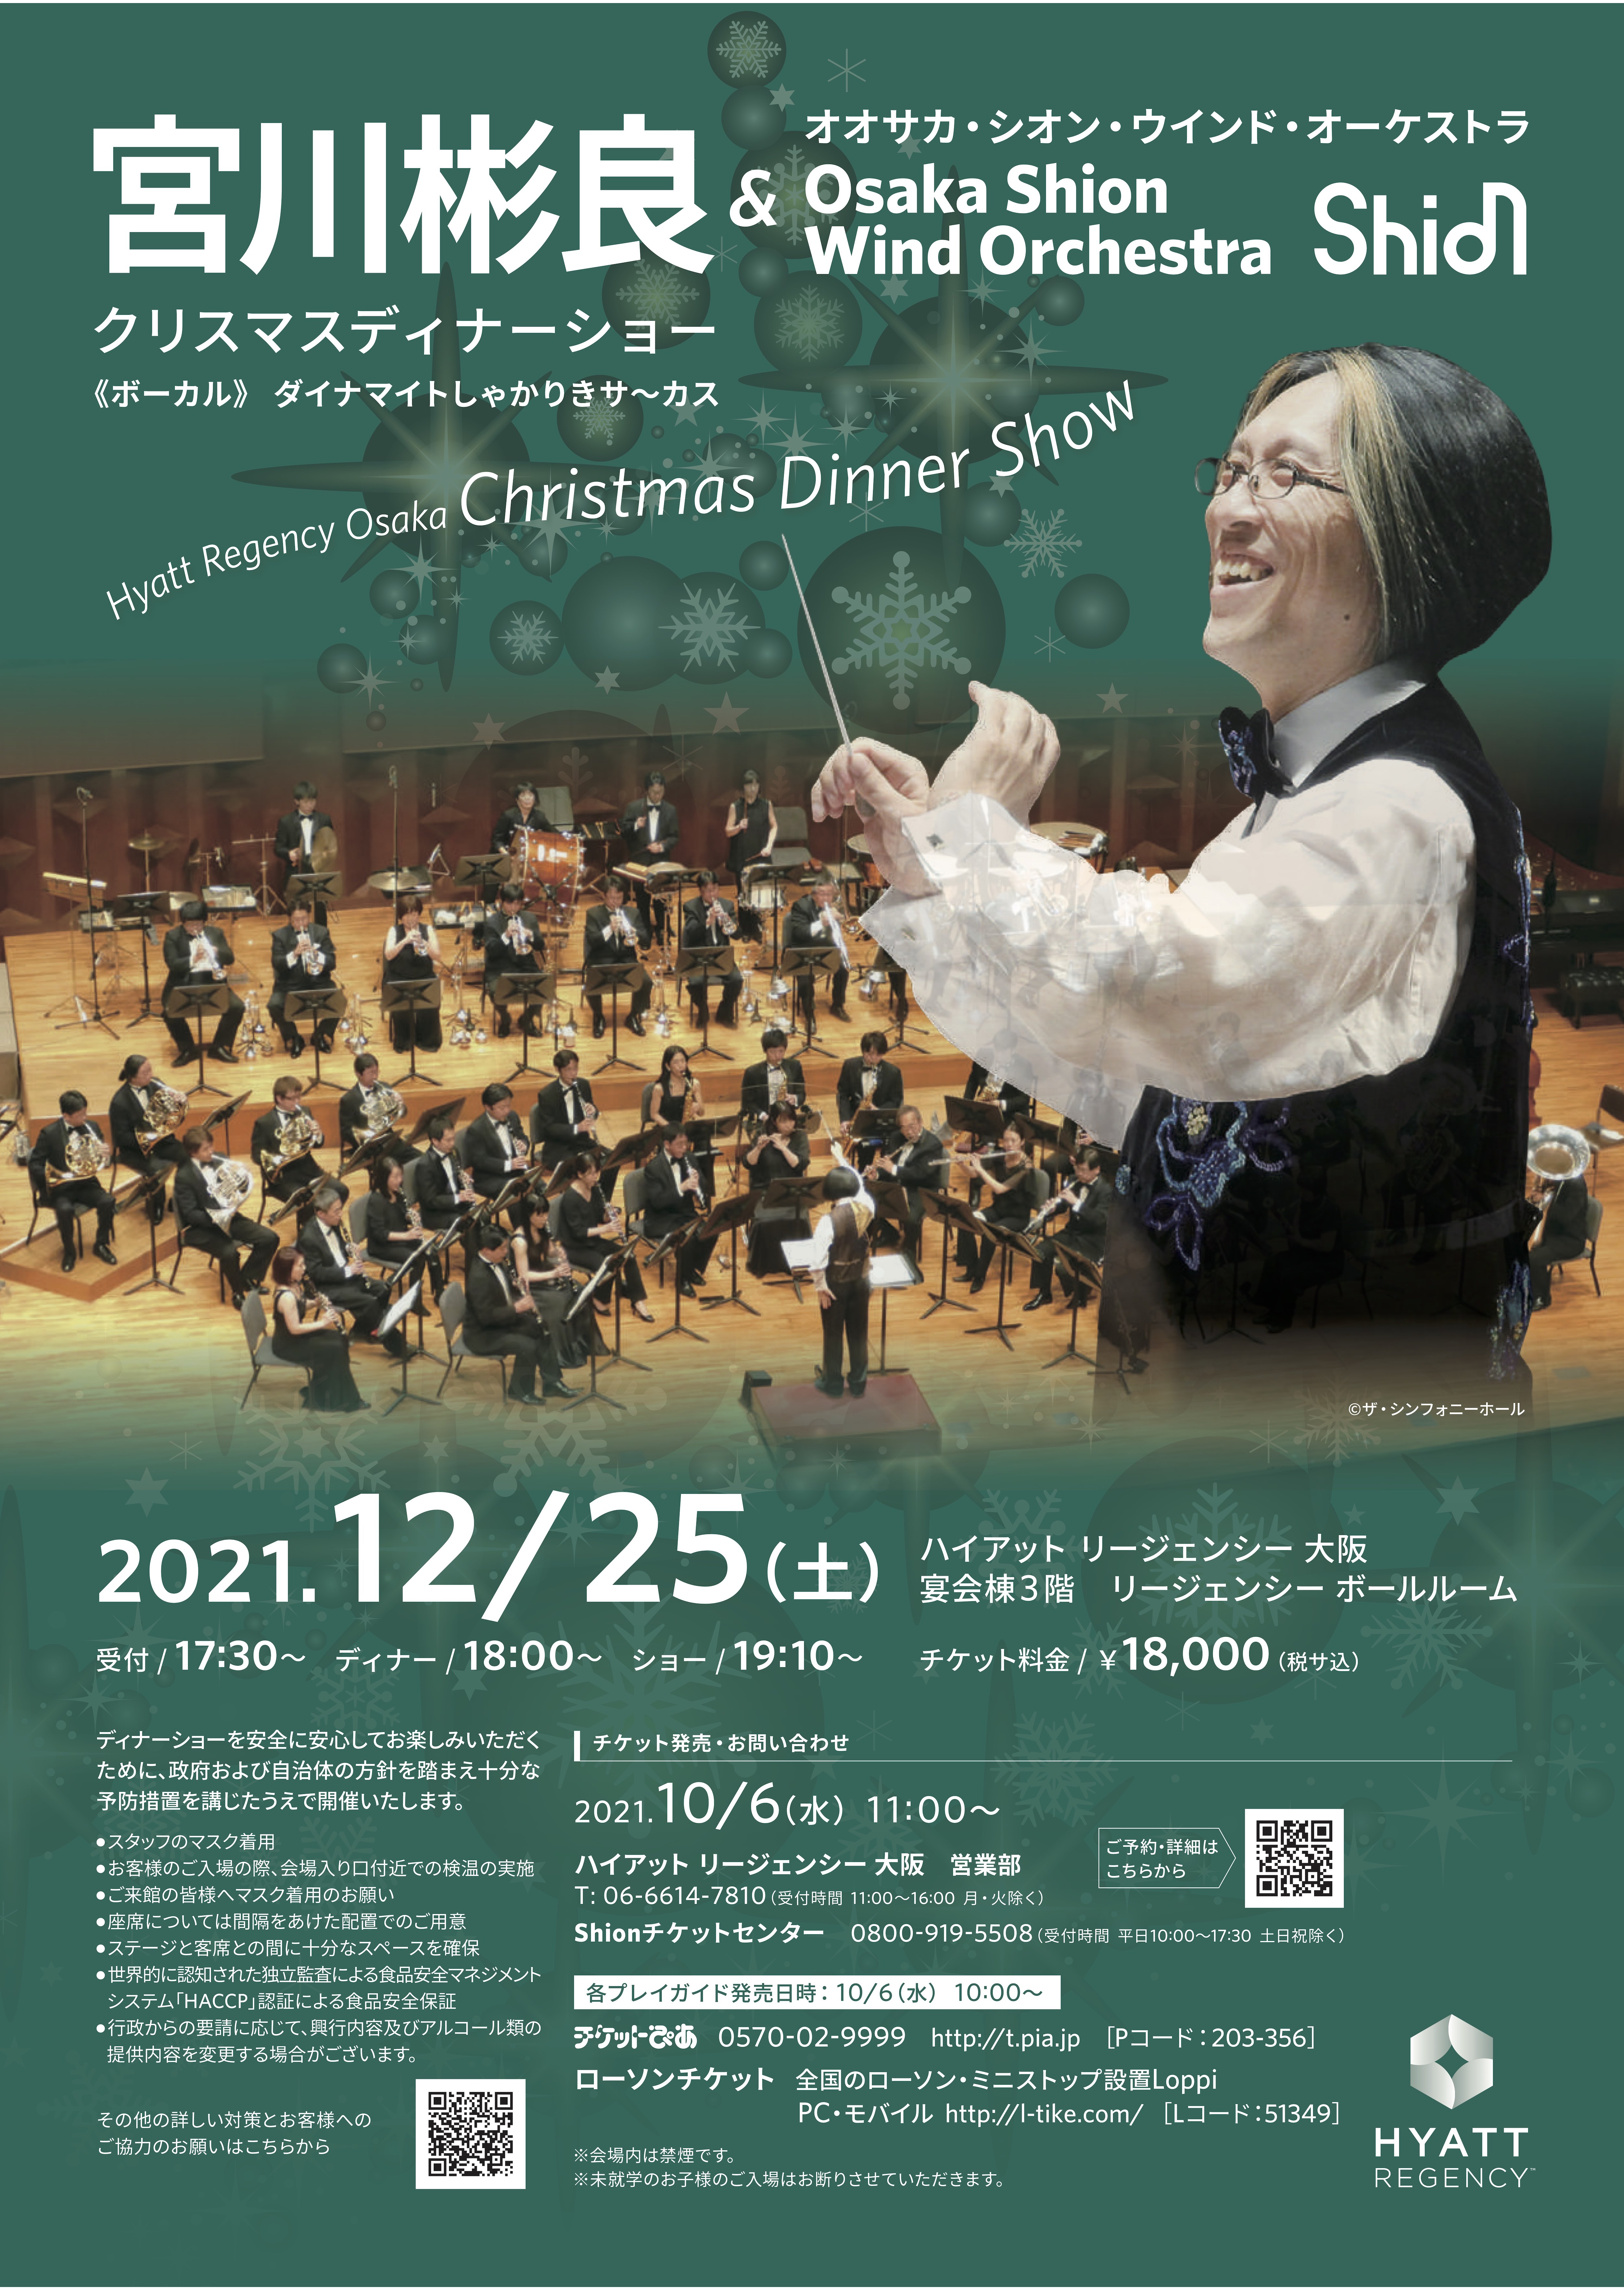 今年はヤマト祭りアフタートーク！Hyatt Regency Osaka Christmas Dinner Show プログラム決定！